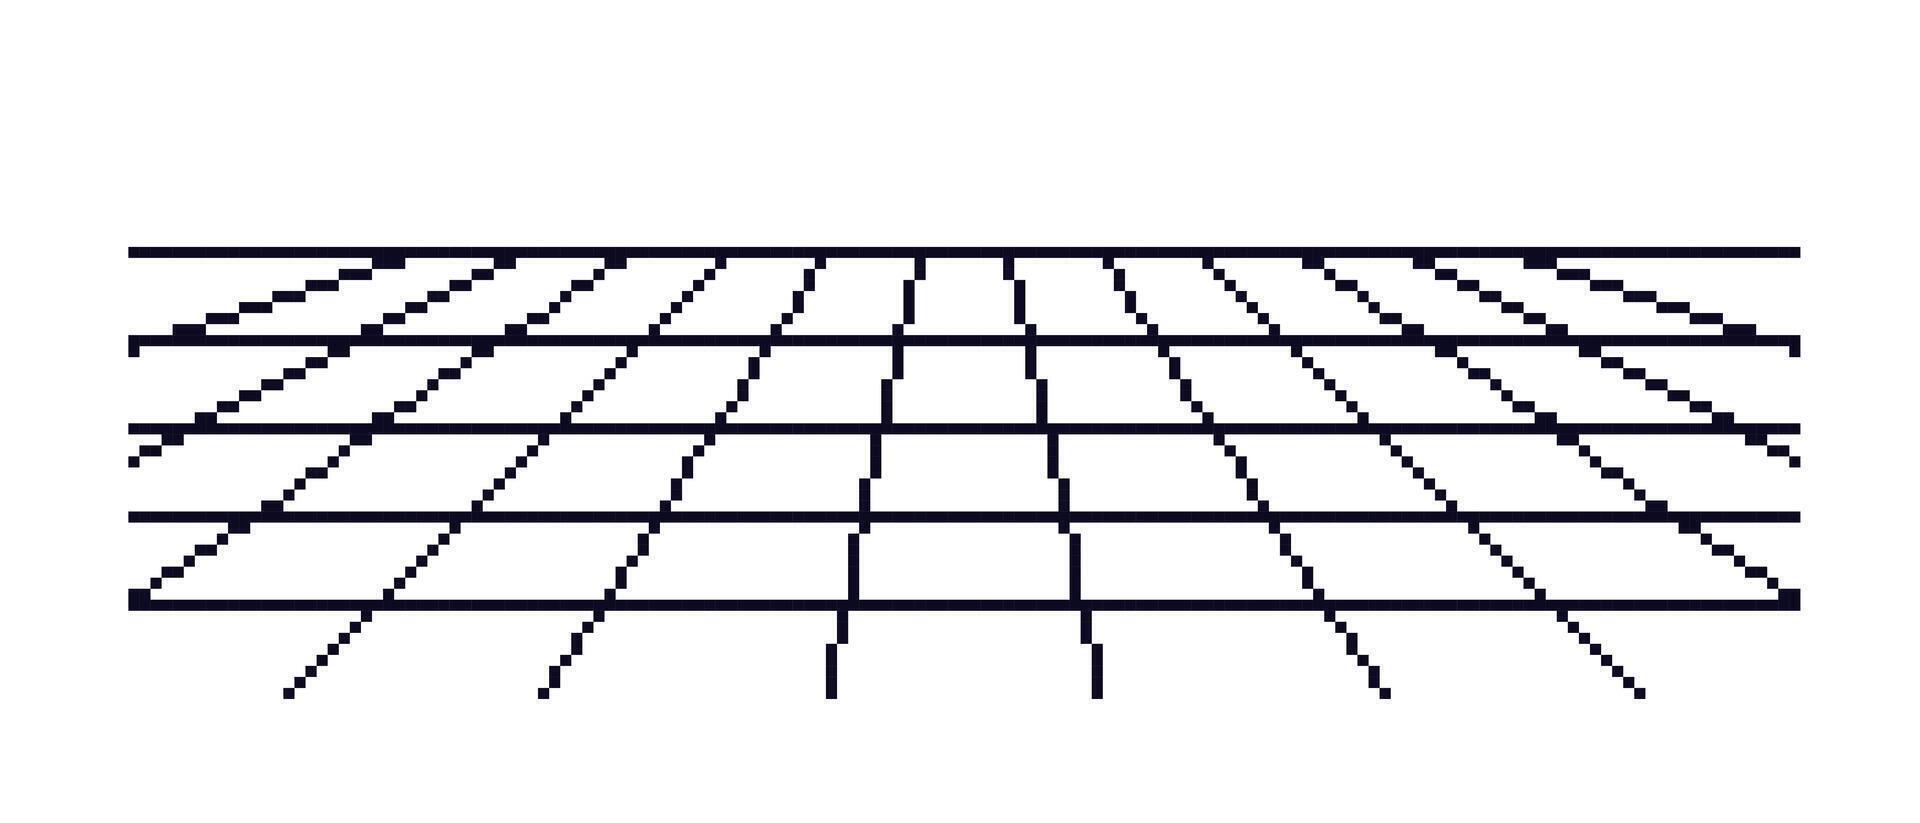 pixel svart perspektiv maska mall. digital tom yta med techno kurva rutnät rader i 80s elektronisk stil med enkel vektor design